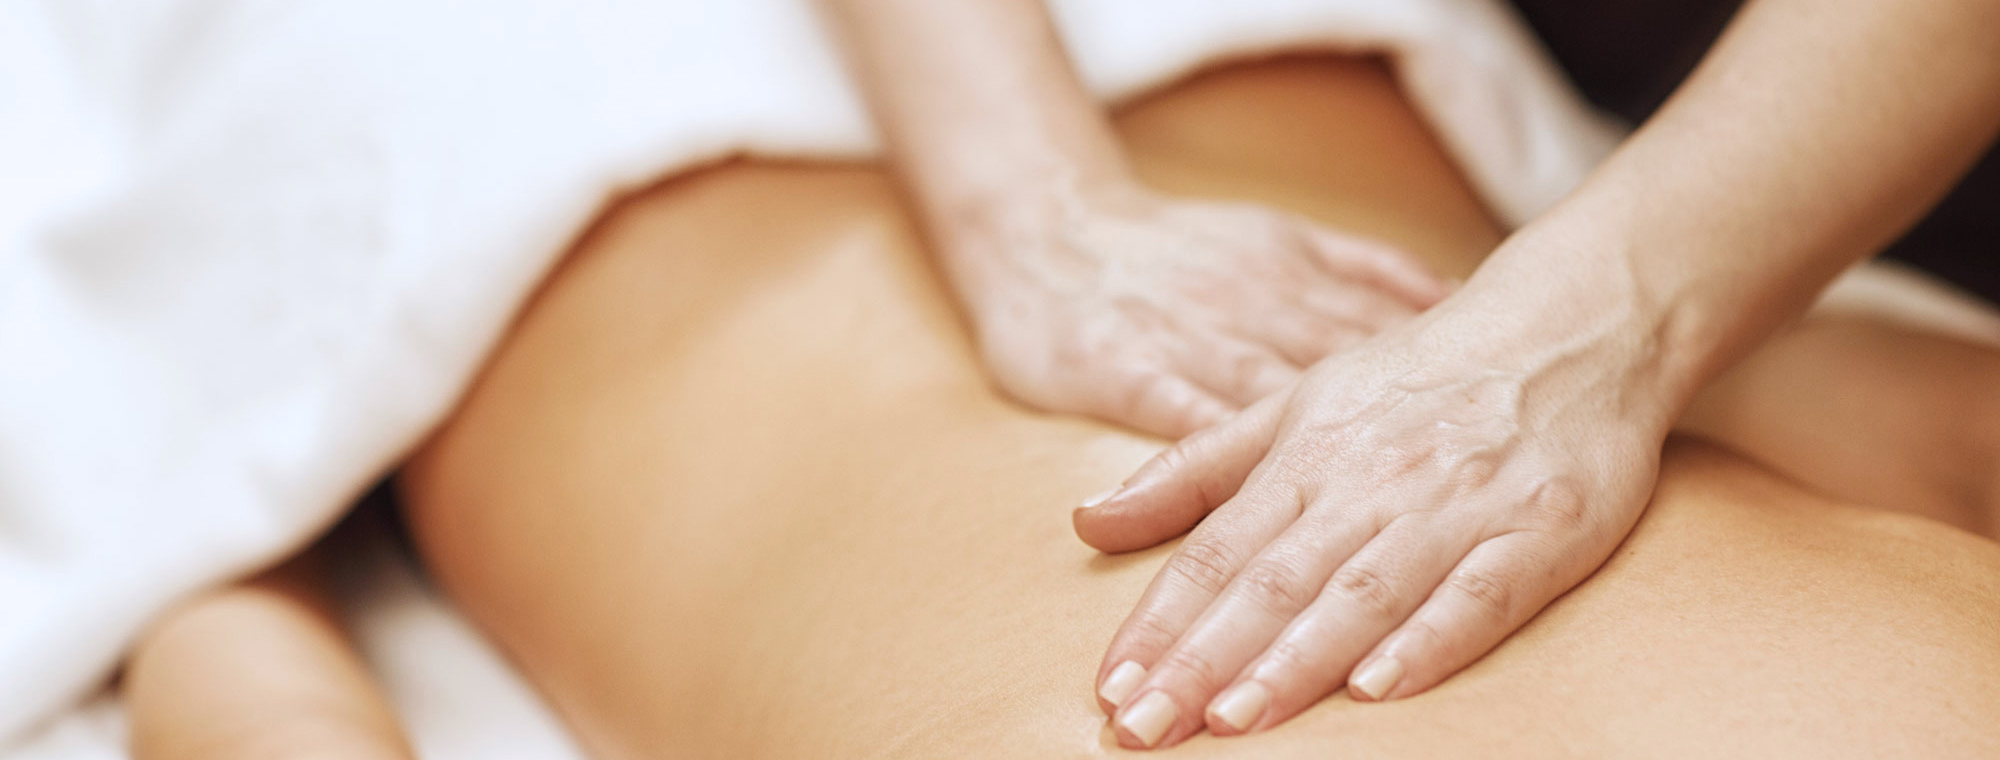 massage Schwabing münchen